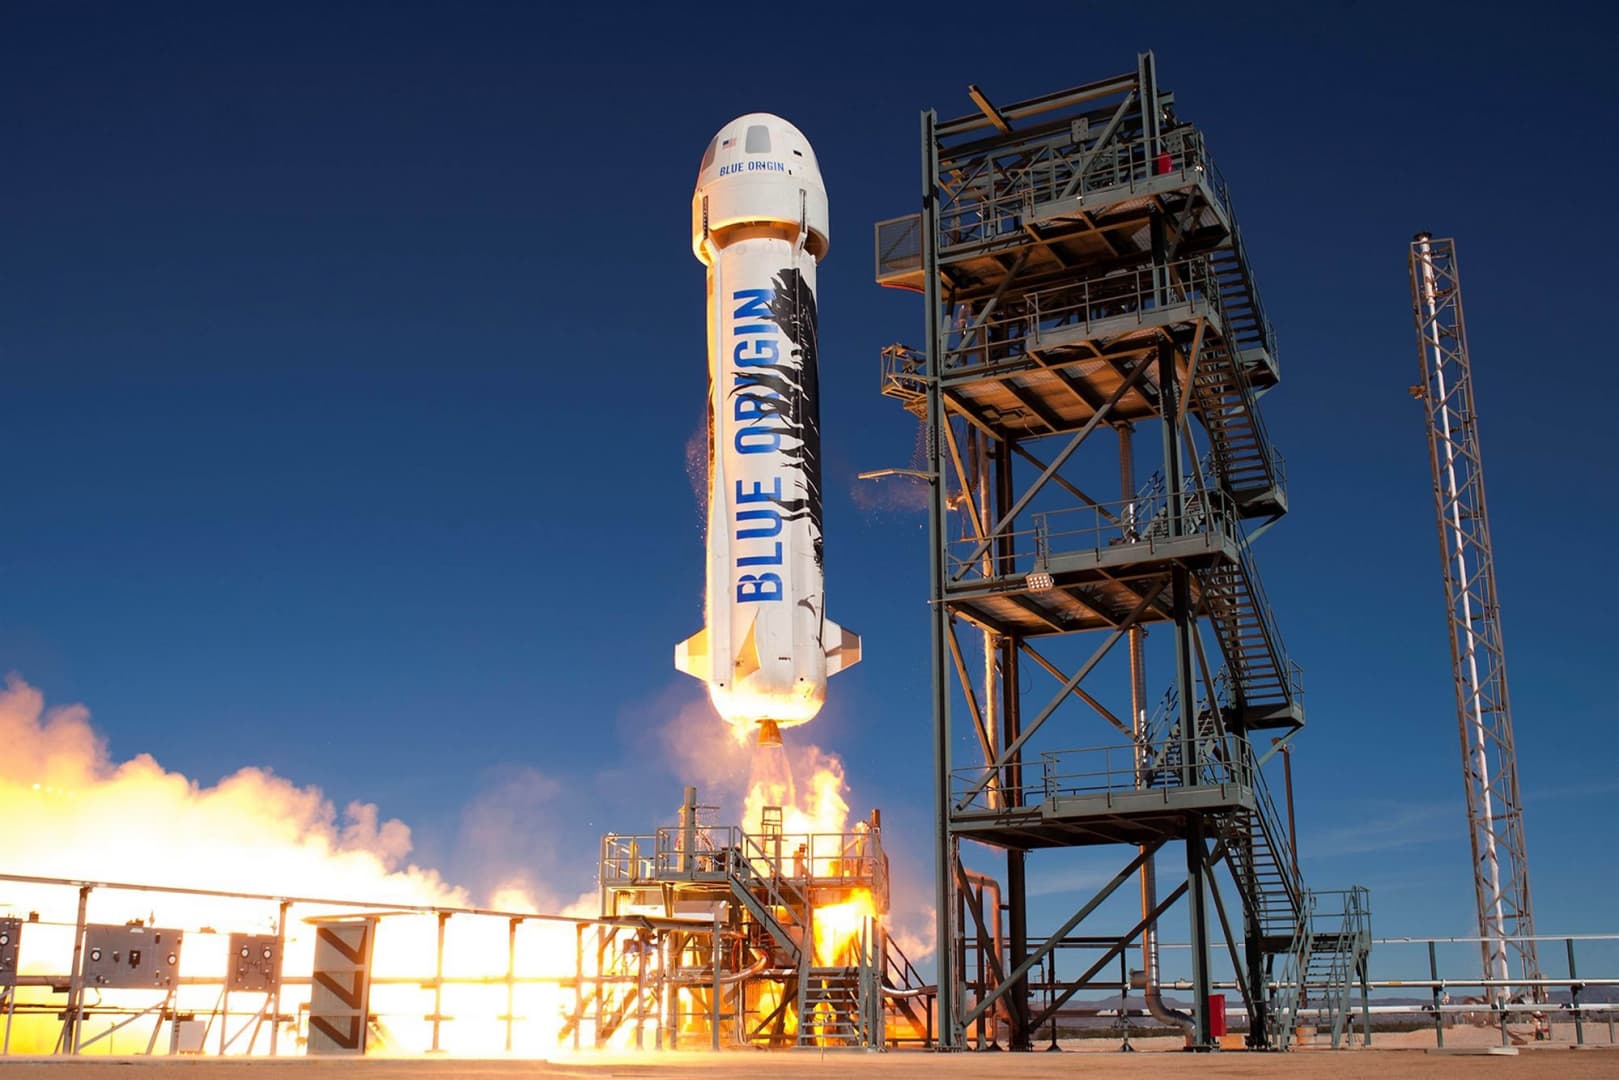 Jeff Bezos Blue Origin cége július 20-ra hirdette meg első űrutazását